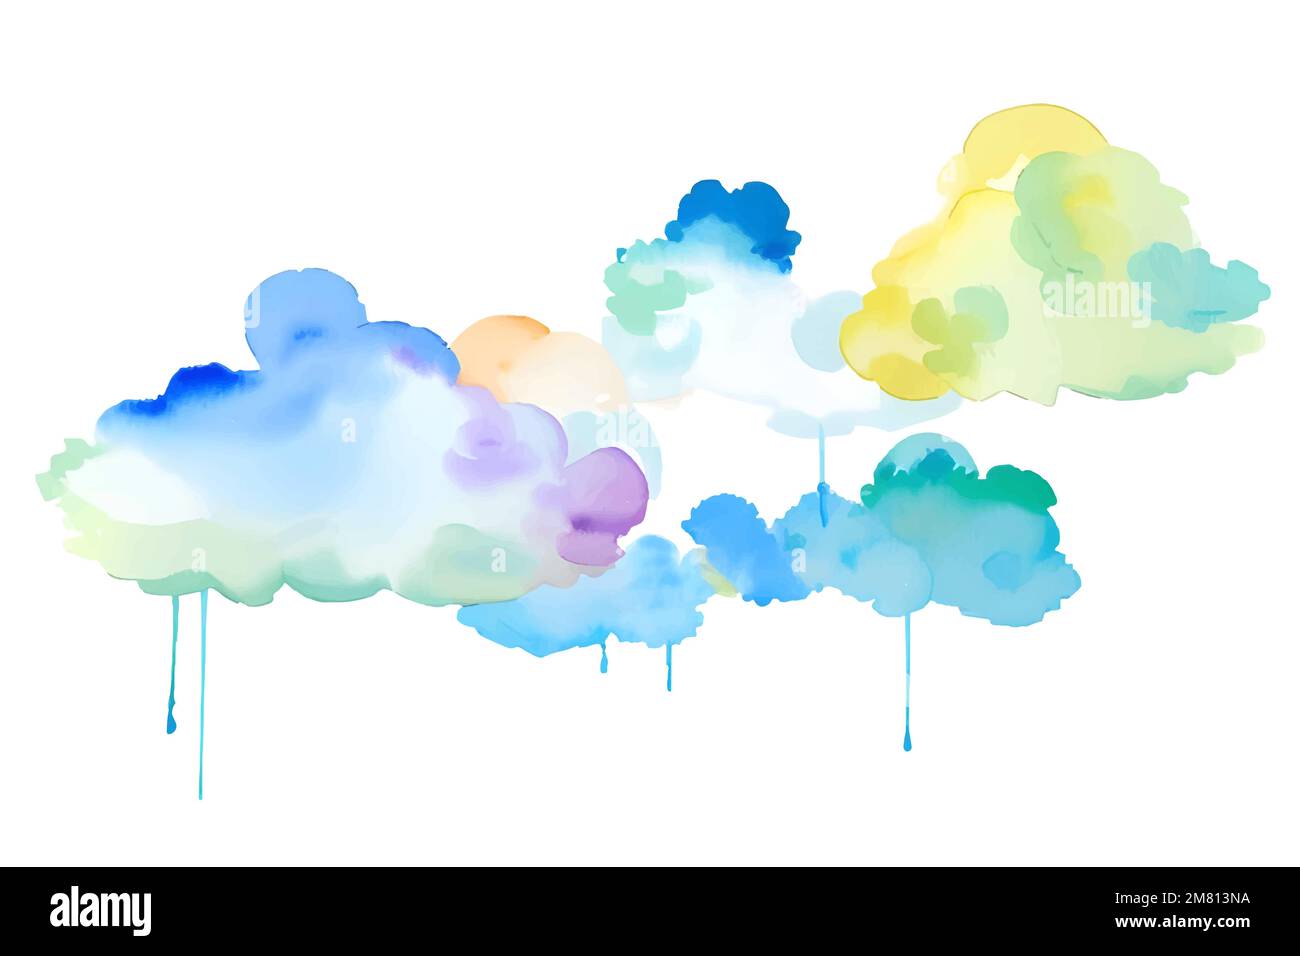 Handgefertigte Illustration von farbenfrohen pastellfarbenen Aquarellen, mehrfarbigen abstrakten Farbspritzern auf weißem Papierhintergrund, Vektor-Aquarellwolke. Stock Vektor